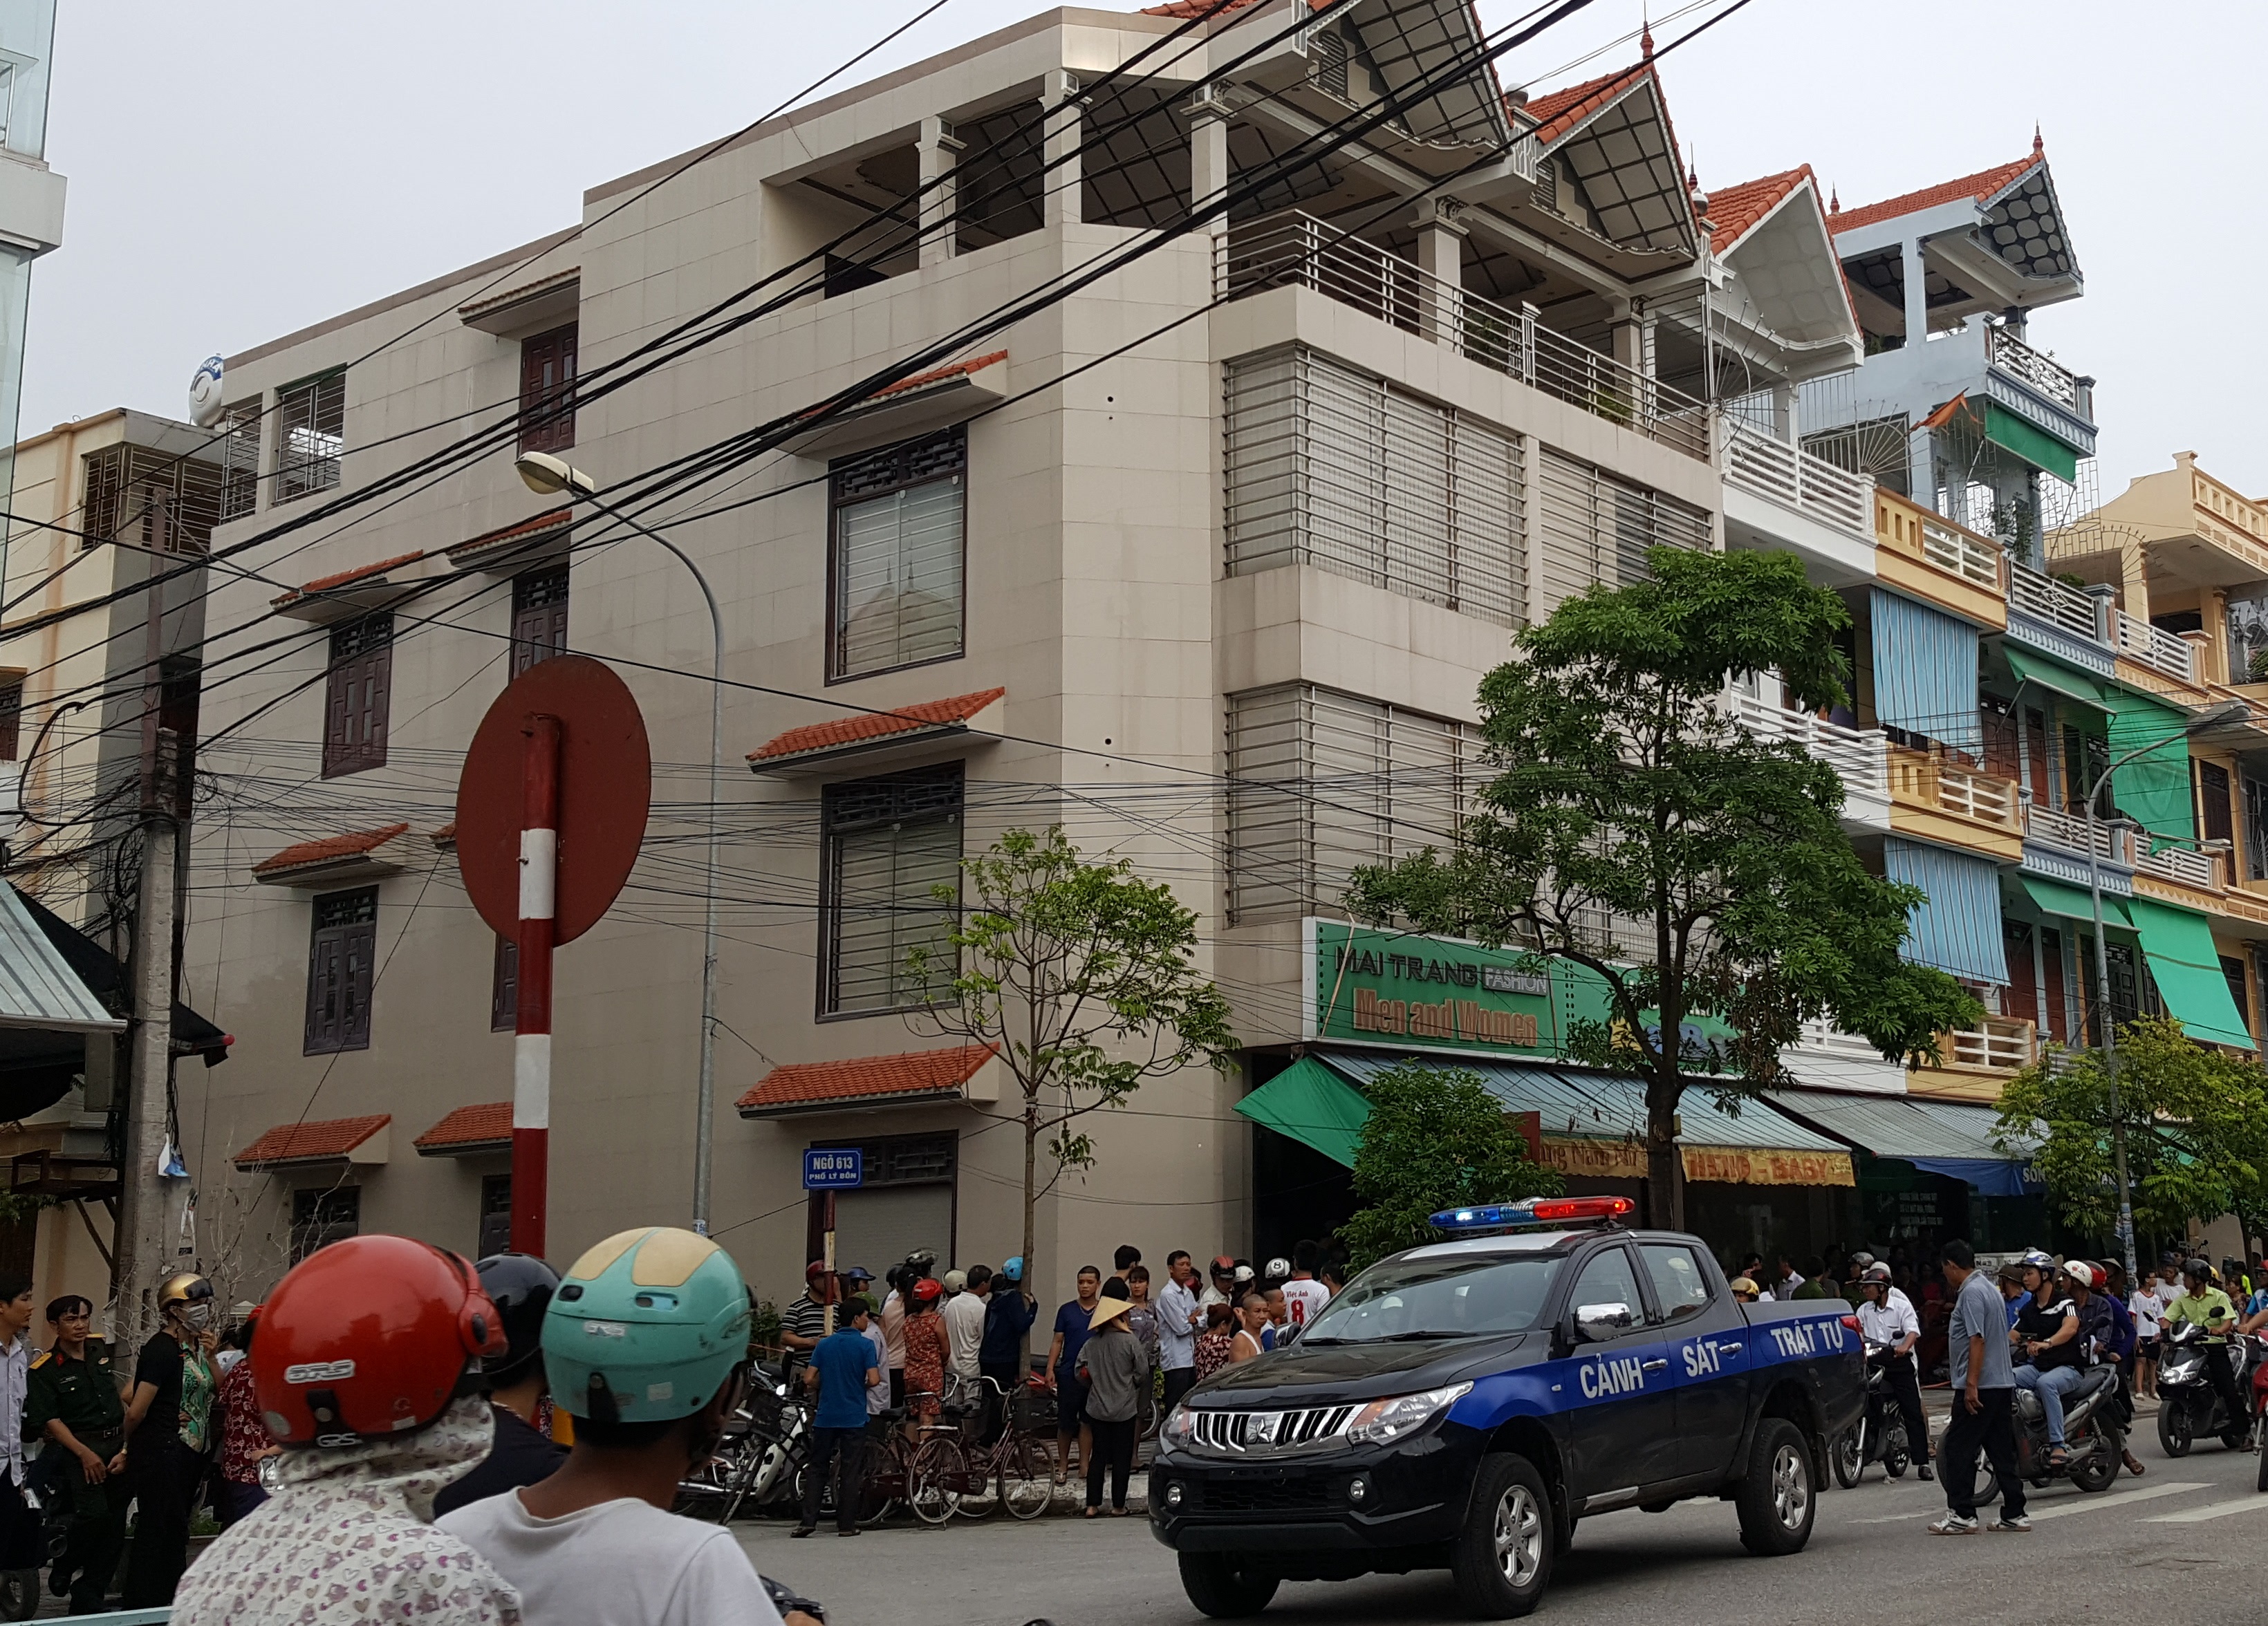 Quần chúng nhân dân đã bắt ngay kẻ sát nhân Nguyễn Văn Tuấn tại hiện trường.